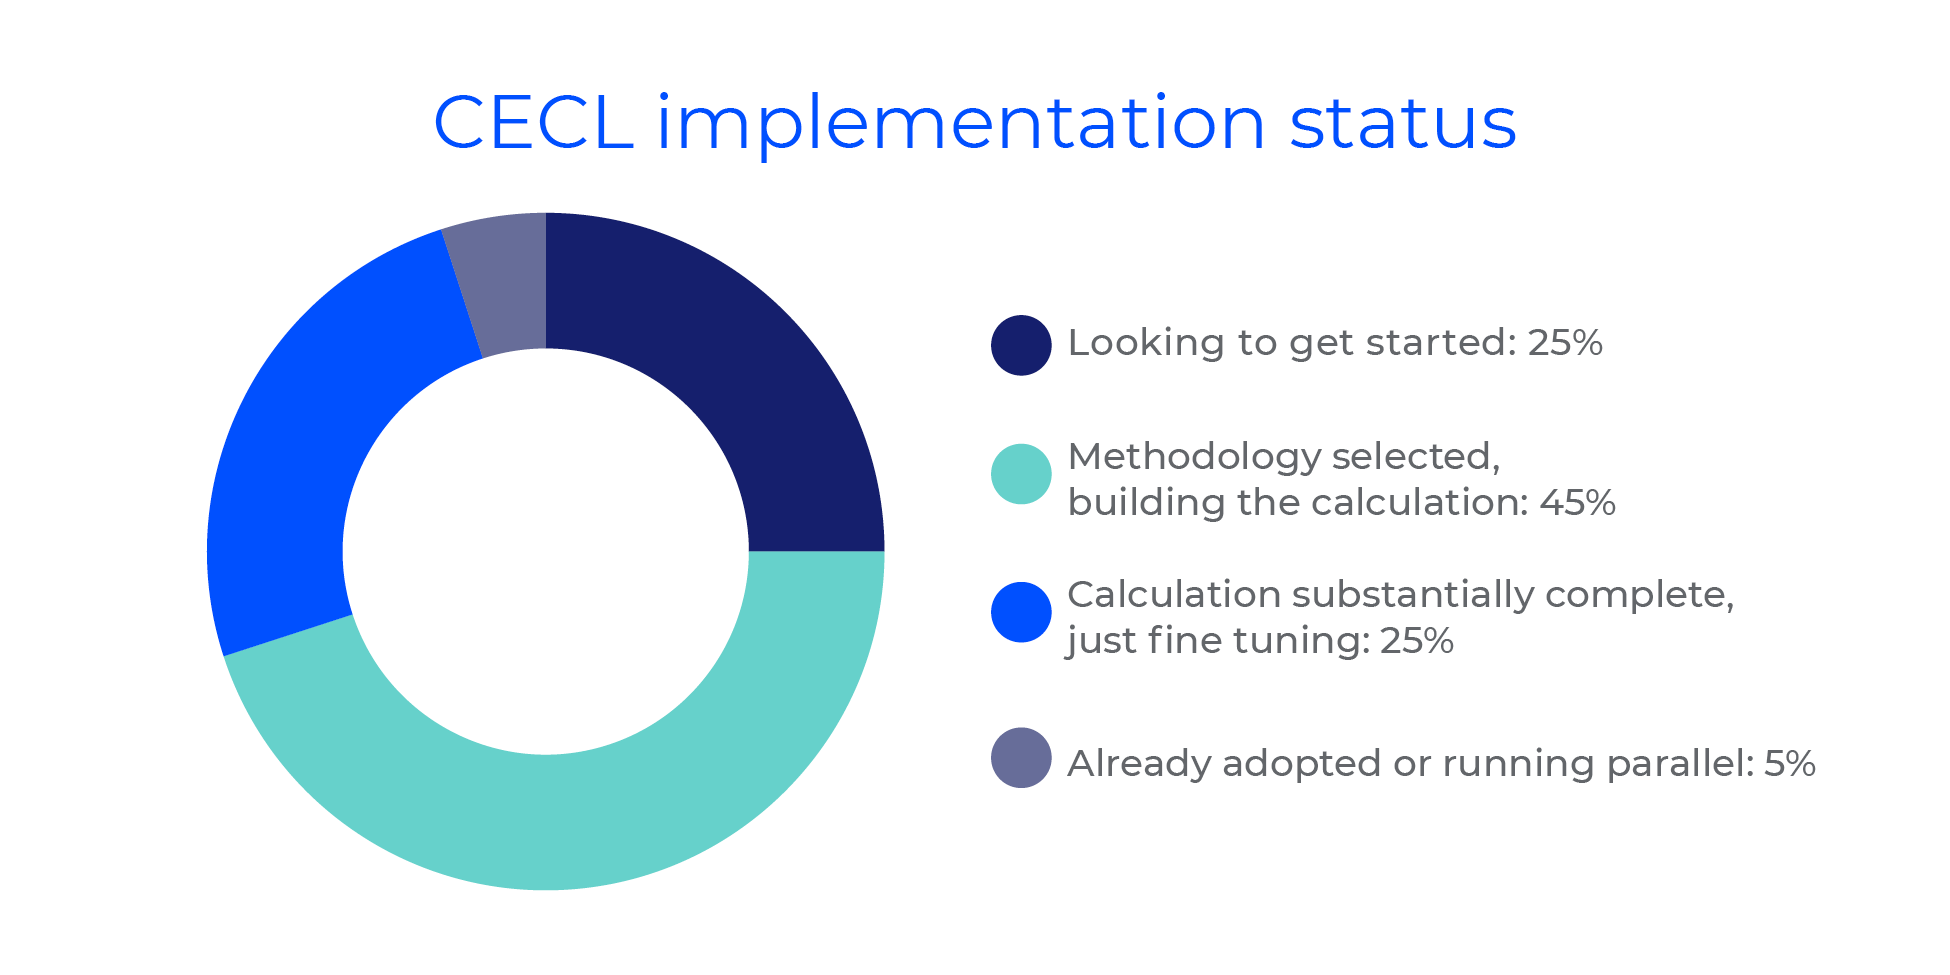 CECL implementation status